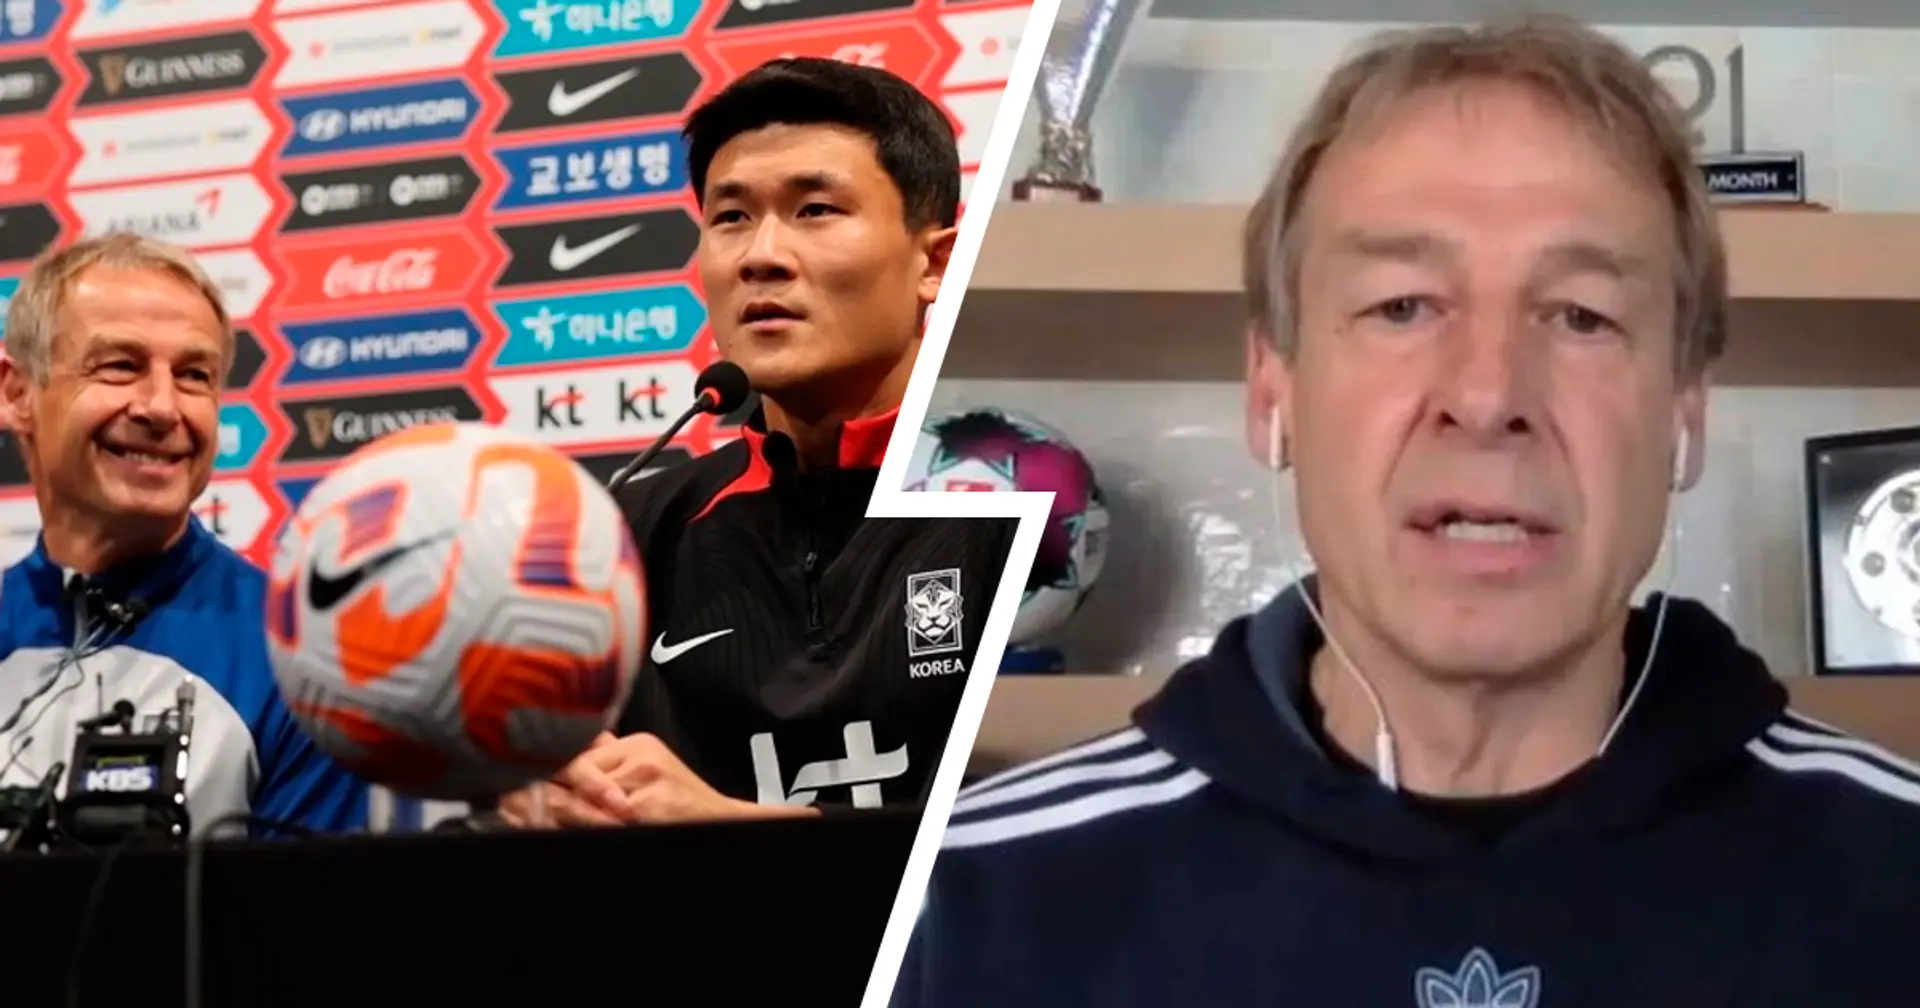 Südkorea-Coach Klinsmann freut sich über Kims Wechsel zu Bayern: "Einer der besten Verteidiger der Welt bei einer der besten Mannschaften der Welt"